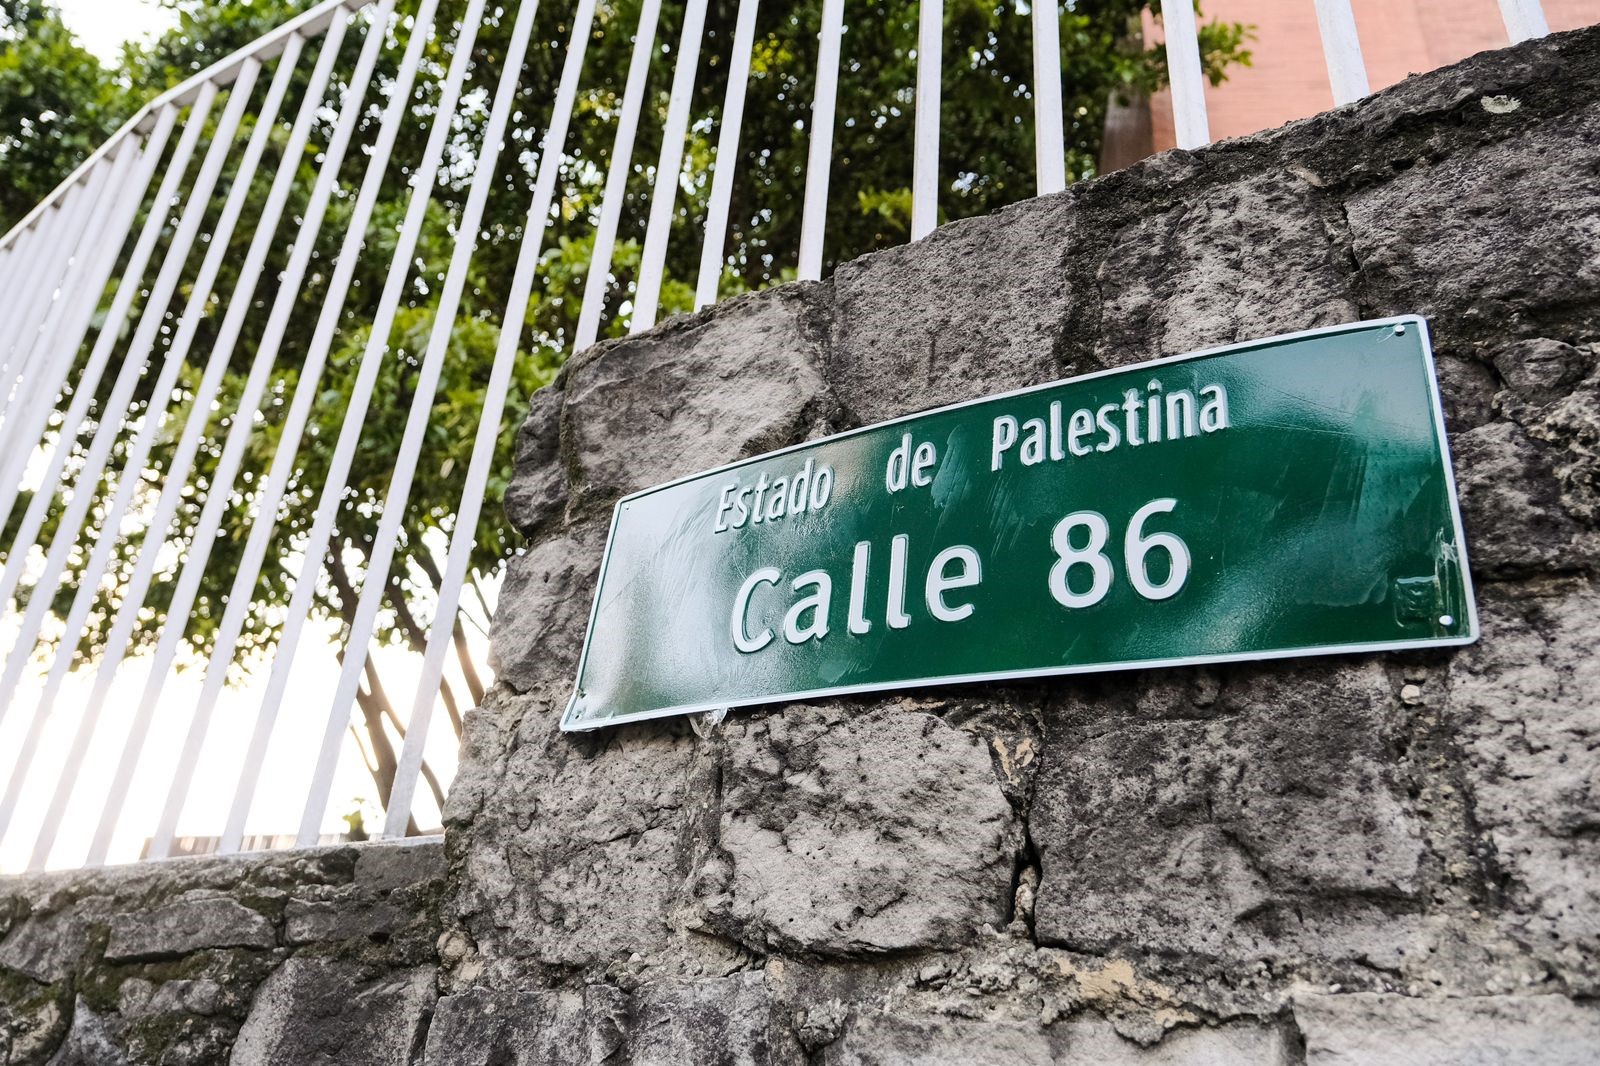 Fotografía en la que aparece una placa de direcciones que dice"Estado de Palestina Calle 86"